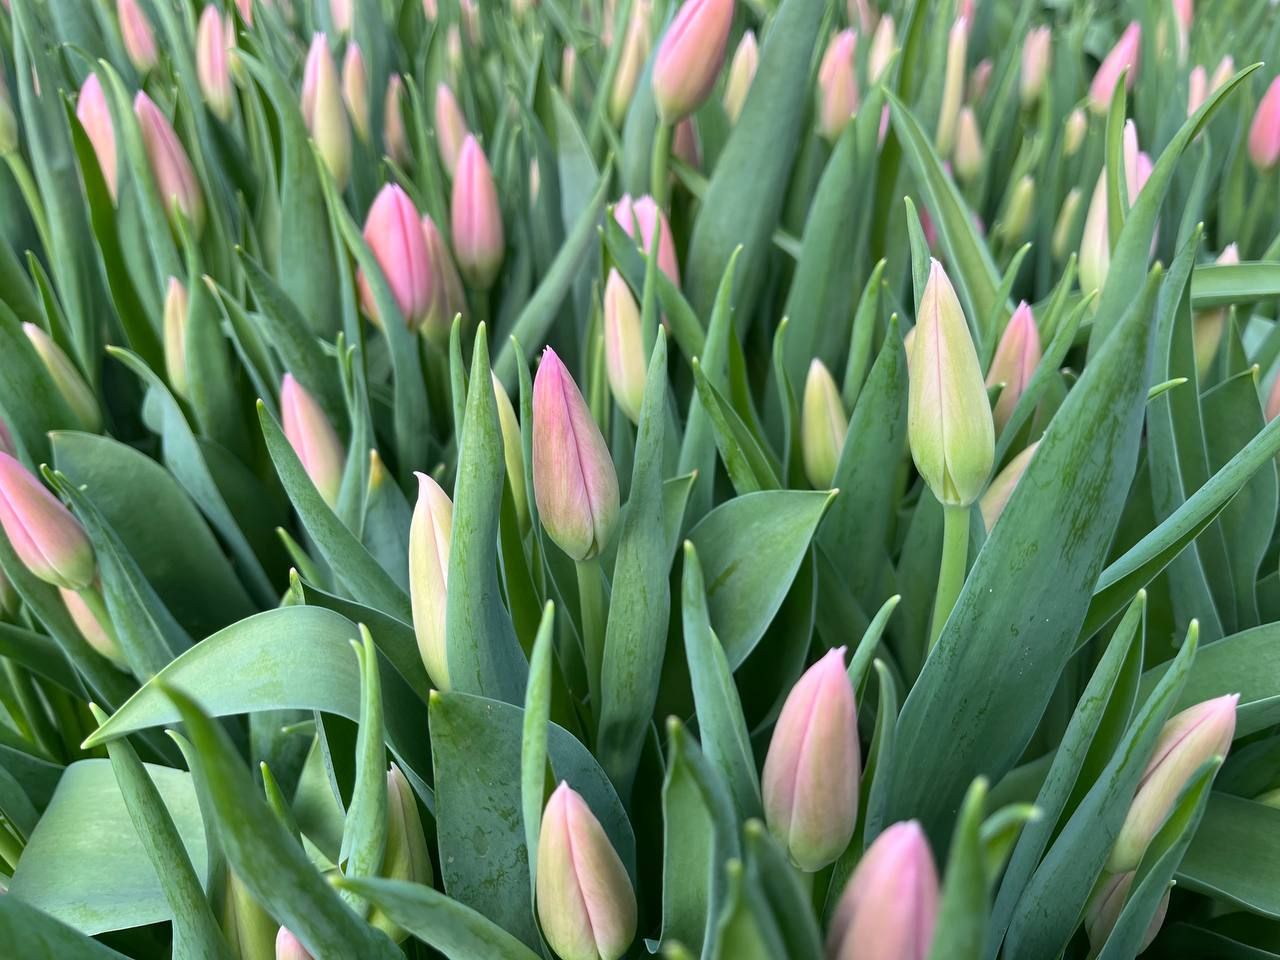 В Челнах к Международному женскому дню вырастили около 100 тысяч тюльпанов